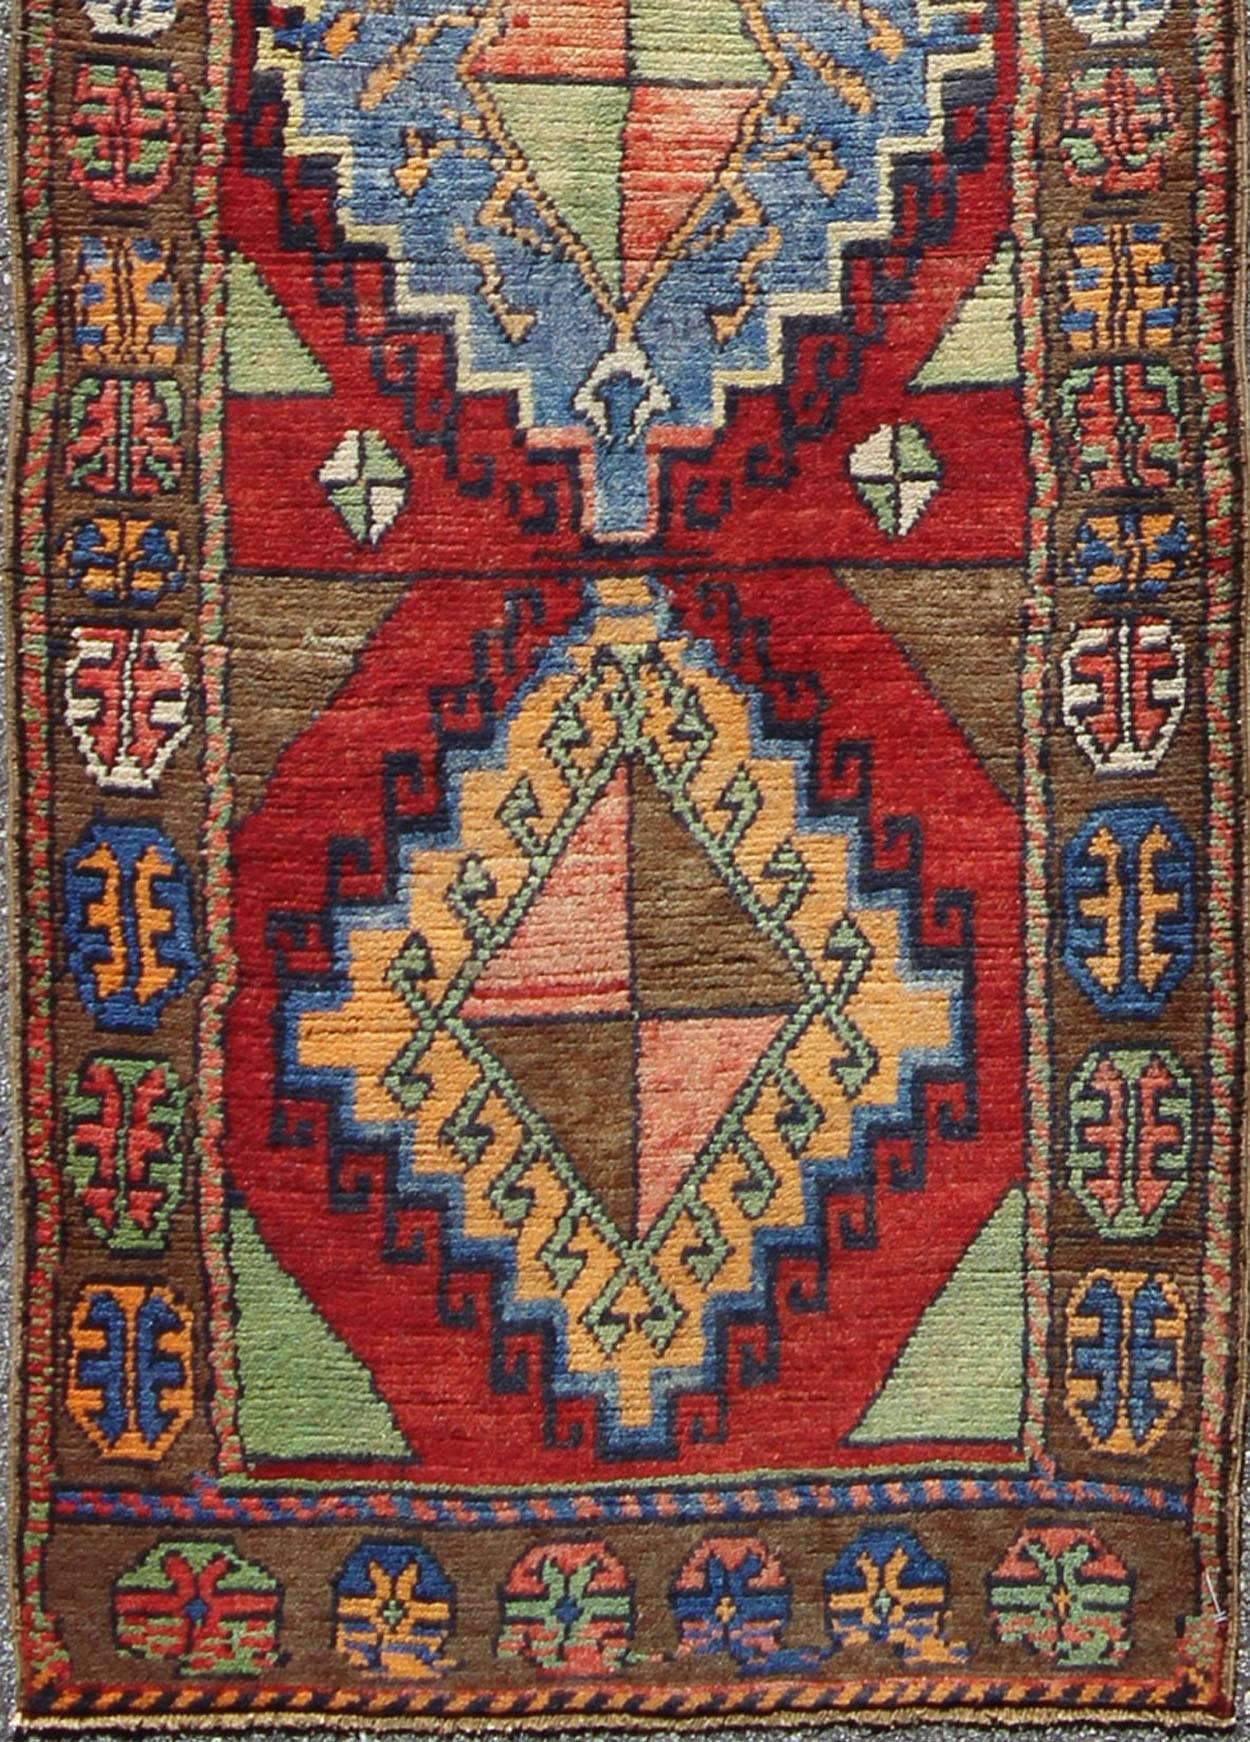 Antique Oushak turc coloré avec un design géométrique tribal en rouge brillant et multi-couleurs, TU-VEY-4608, Tapis de course turc antique.

Ce magnifique tapis Oushak est resplendissant avec de nombreux éléments de design accrocheurs et